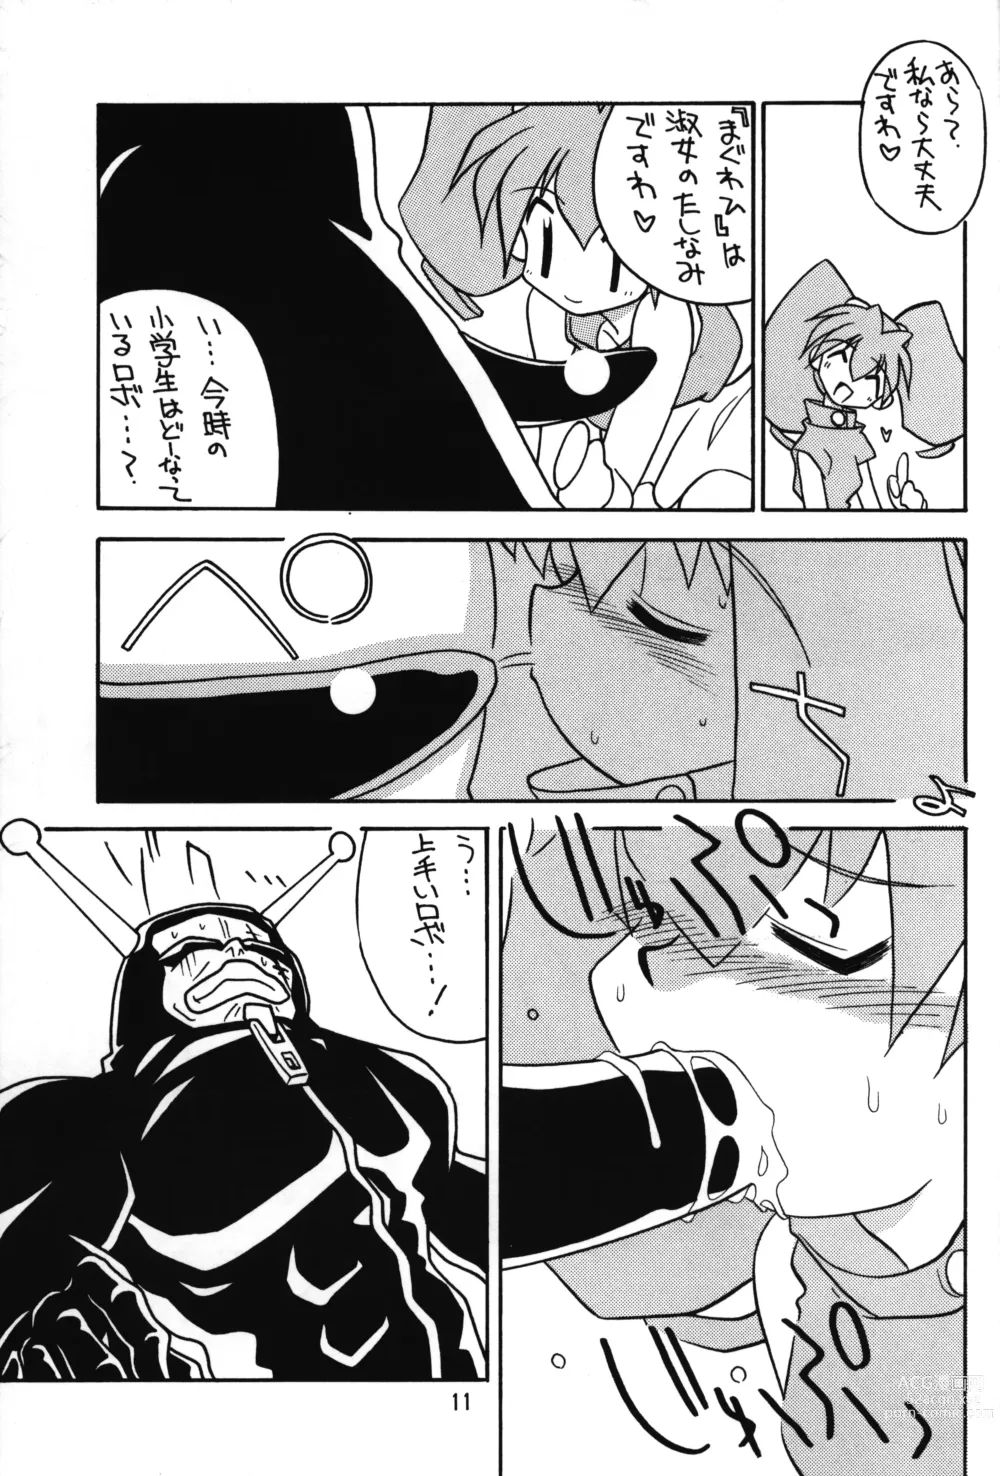 Page 10 of doujinshi Medabot to Tatami Furui Hou ga ii!